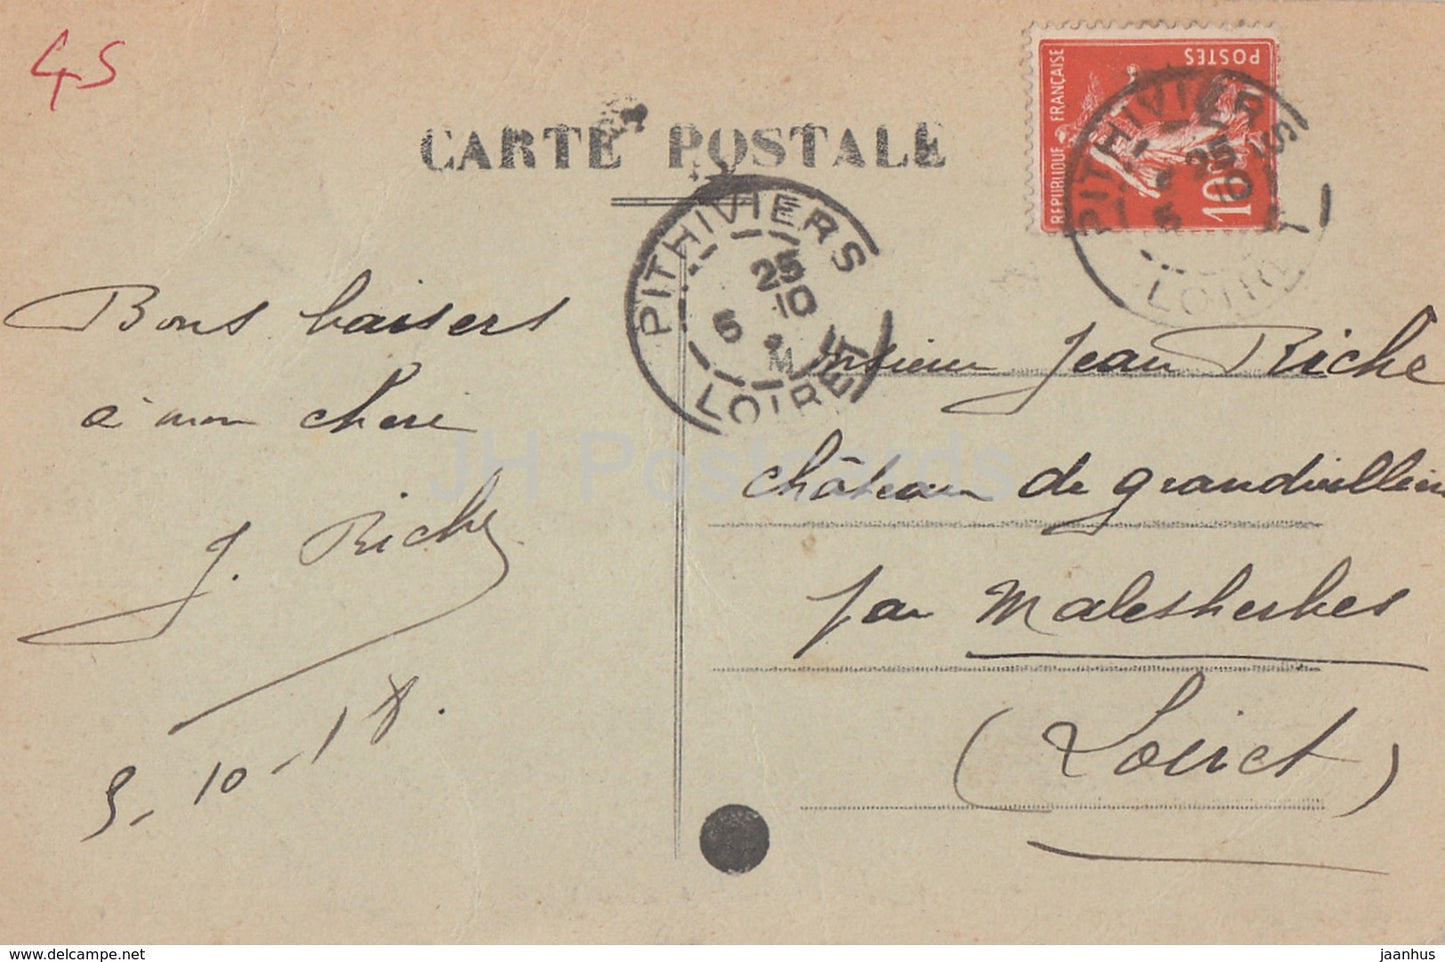 Pithiviers - Château de St Pierre A la Groue - château - carte postale ancienne - 1918 - France - utilisé